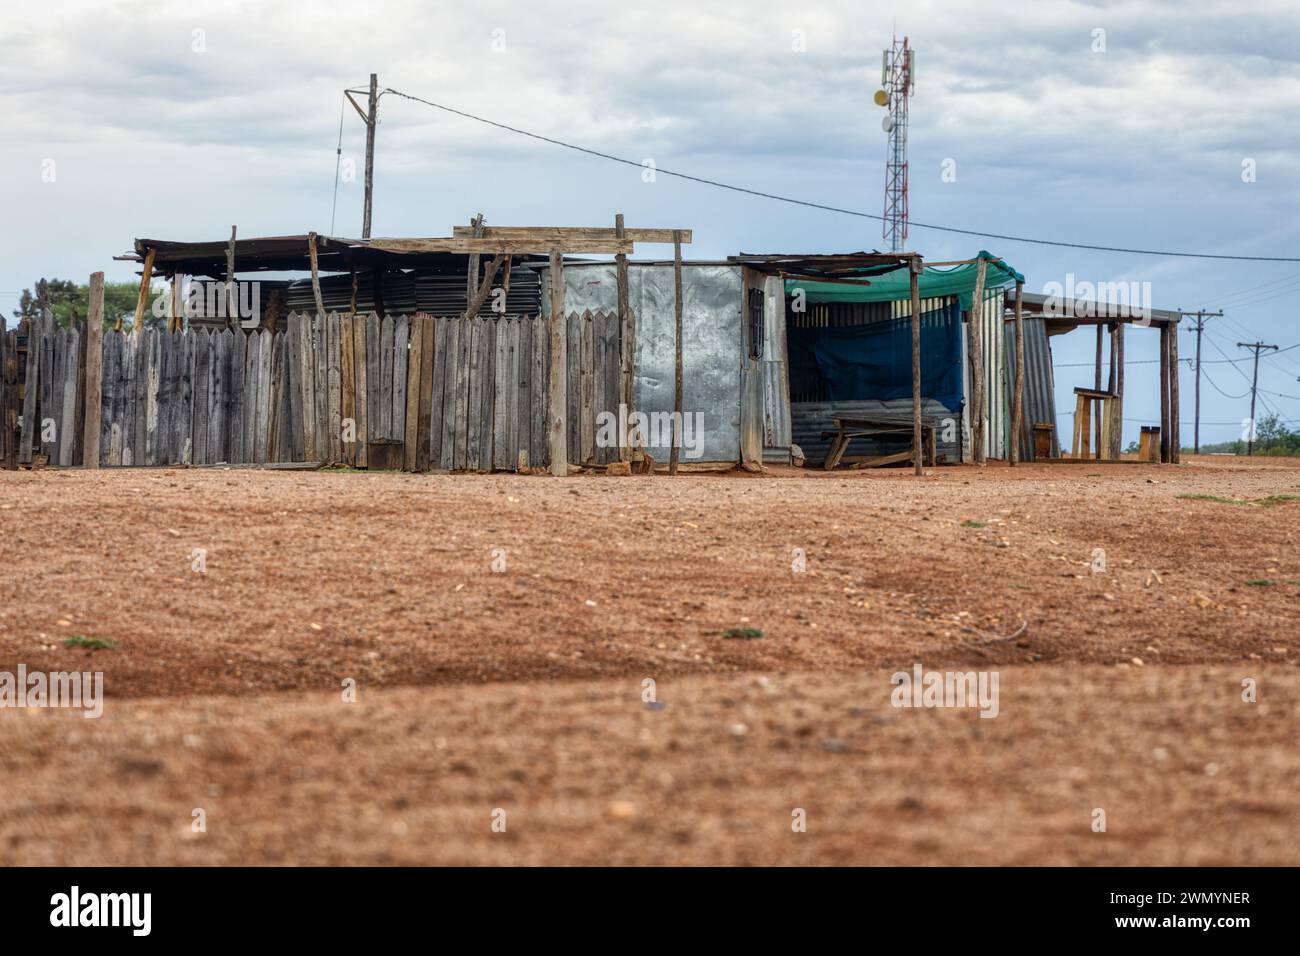 township informelle Siedlung in afrika in der Nähe eines Hügels, Hütte aus Wellblech und Holz, moderne Einrichtungen, Elektrizität und Mobilfunknetz Stockfoto